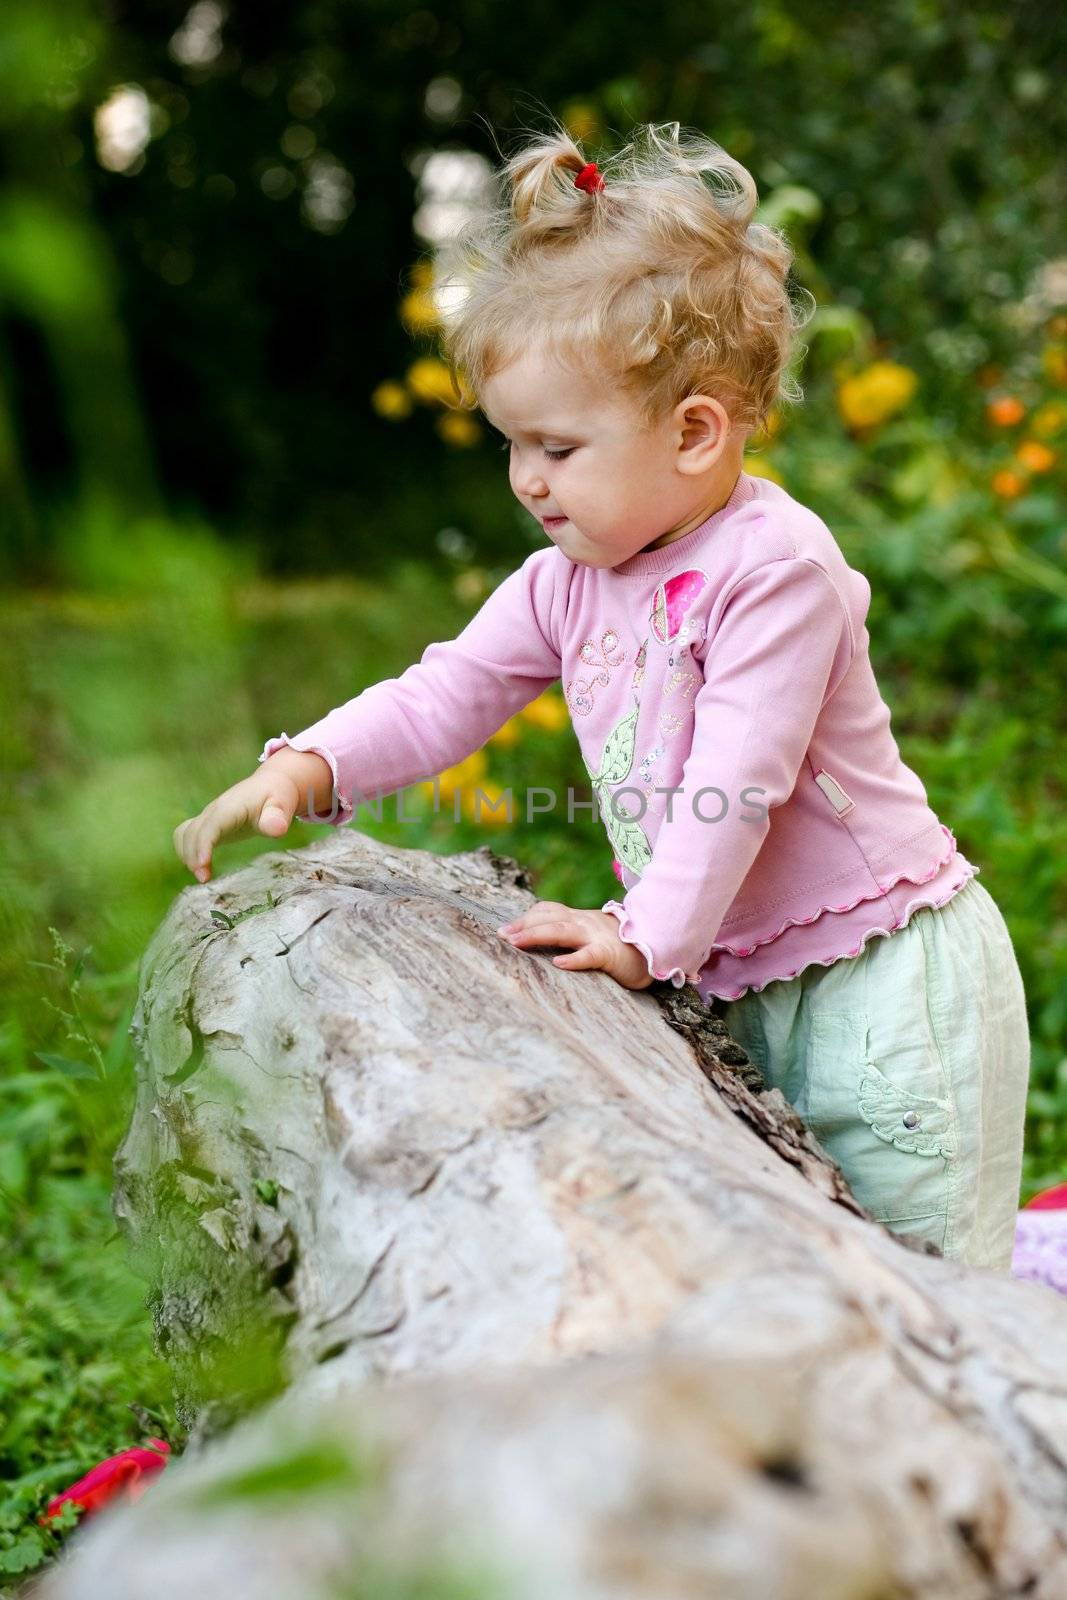 Baby-girl outdoors by velkol